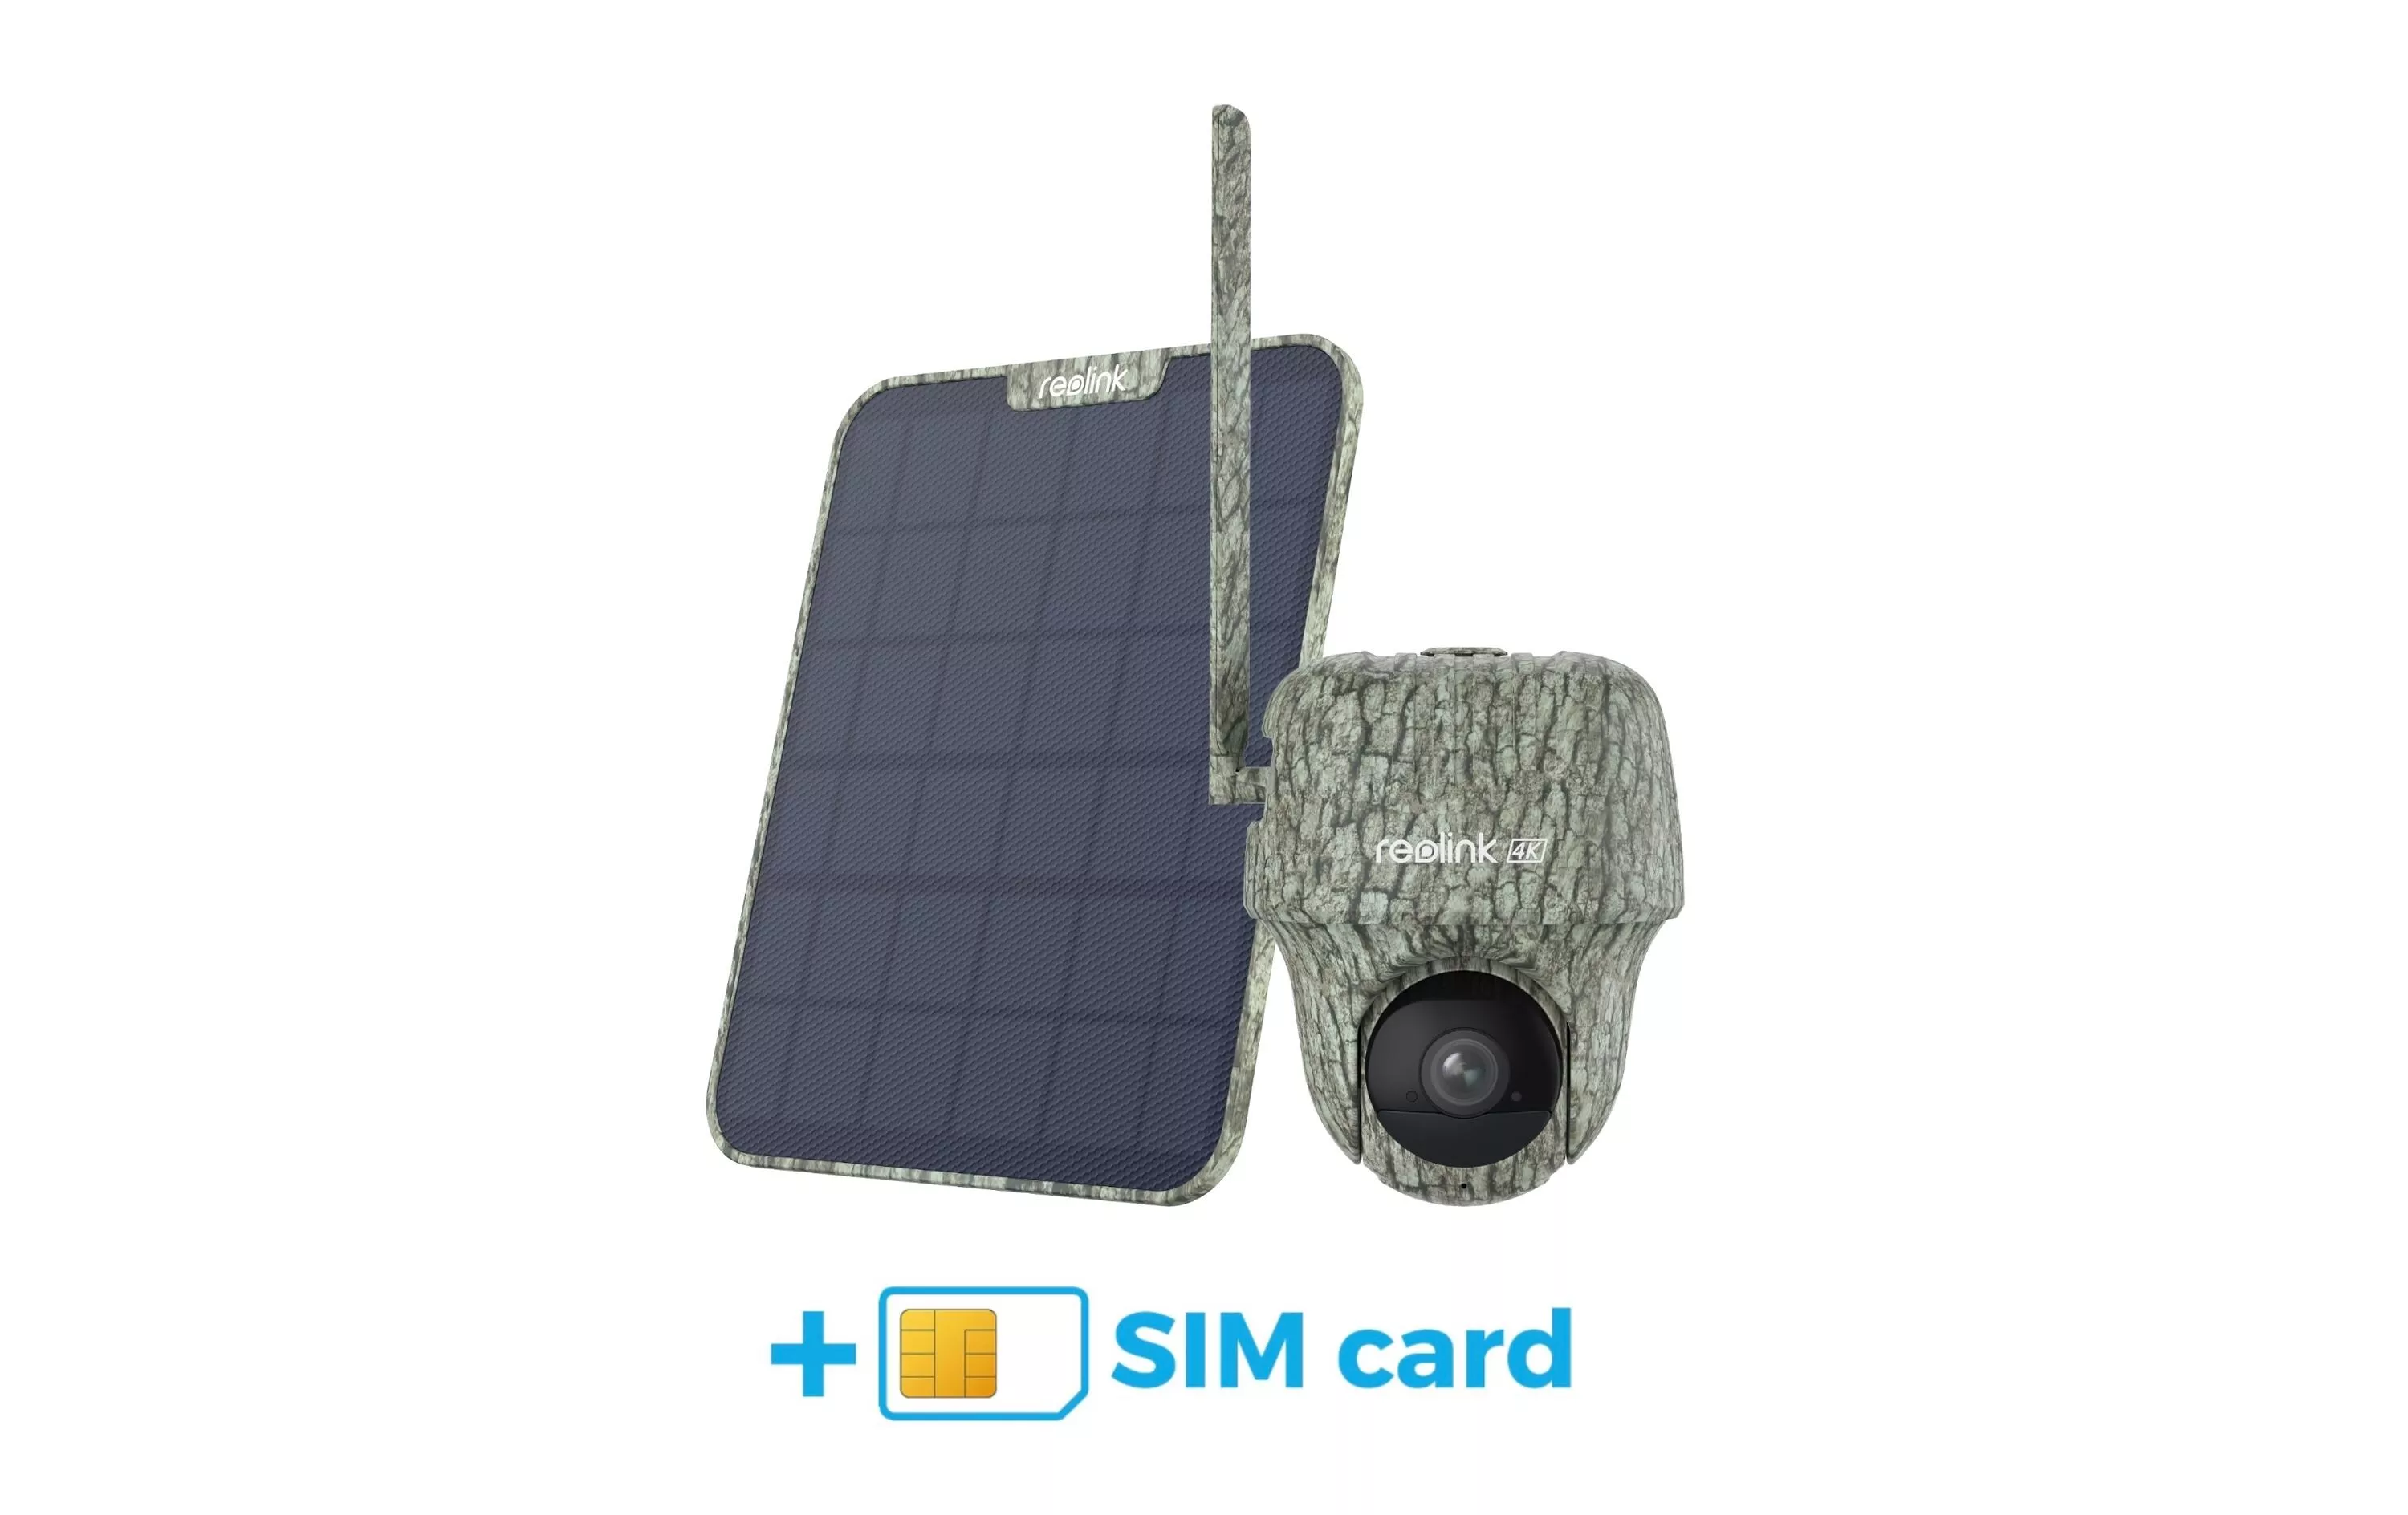 Telecamera Reolink 4G/LTE G450 incl. pannello solare 2 e SIM